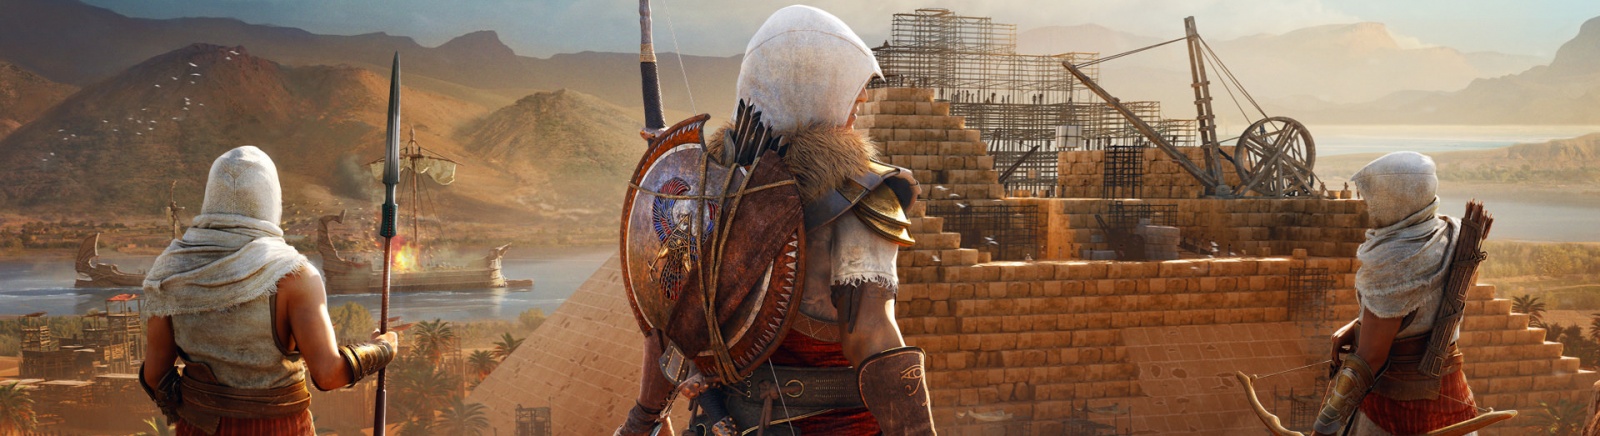 Дата выхода Assassin's Creed: Origins - The Hidden Ones (Assassin's Creed: Истоки - Незримые)  на PC, PS4 и Xbox One в России и во всем мире